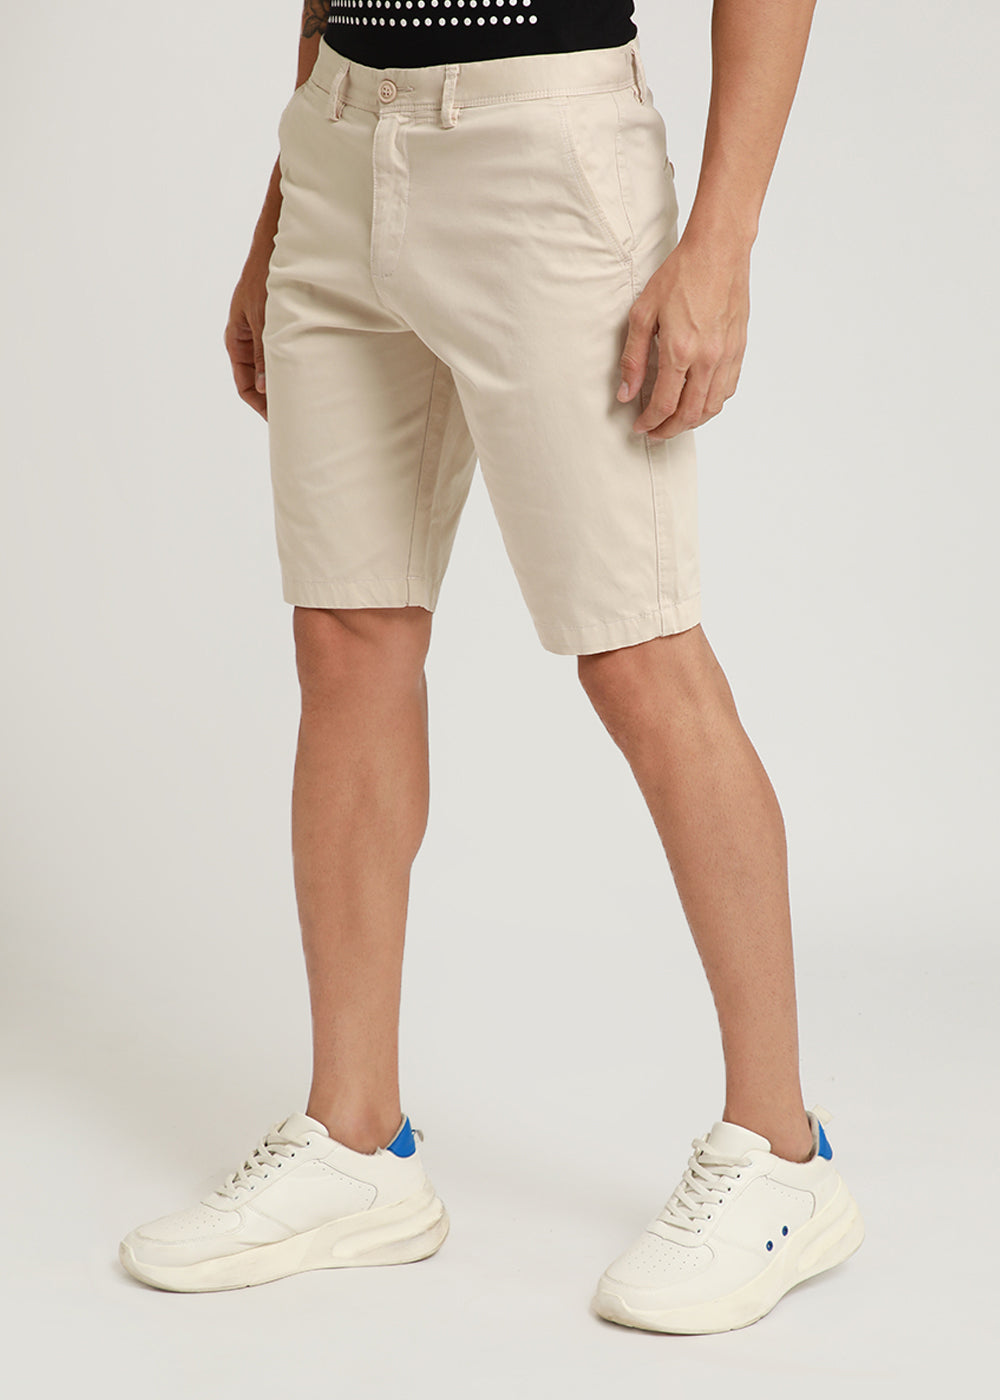 Ivory Cream Shorts